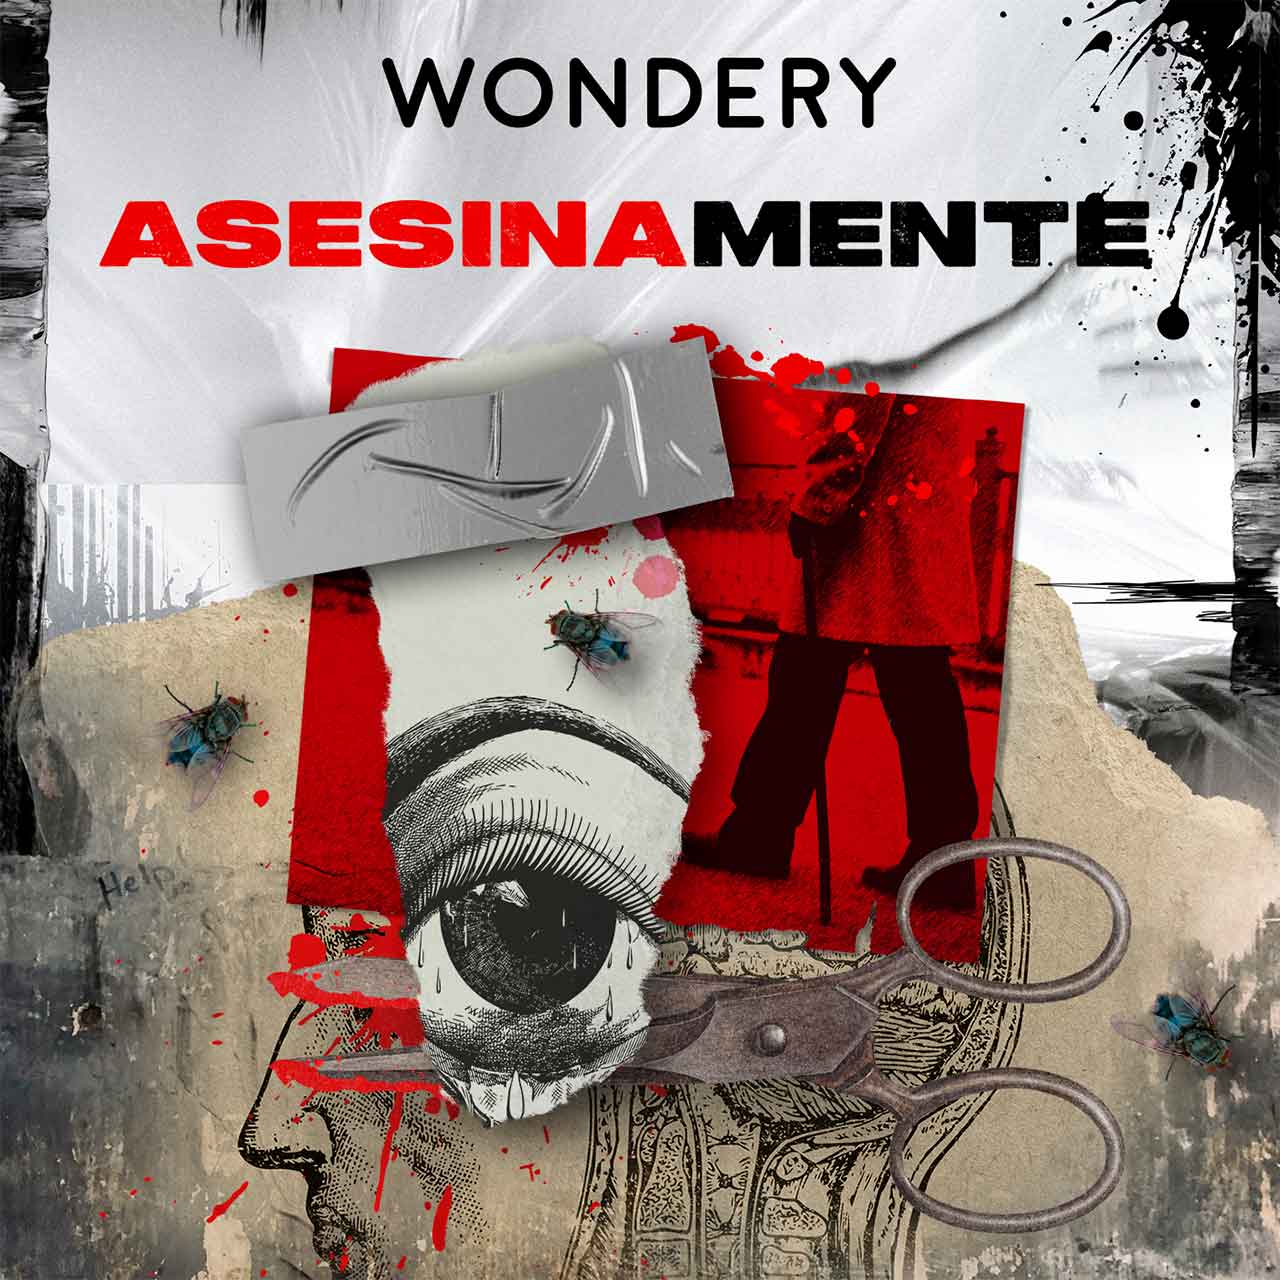 Amazon Music y Wondery lanza el podcast de crimen real «Asesinamente», narrado por Paola Rojas, que explora la mente de asesinos seriales